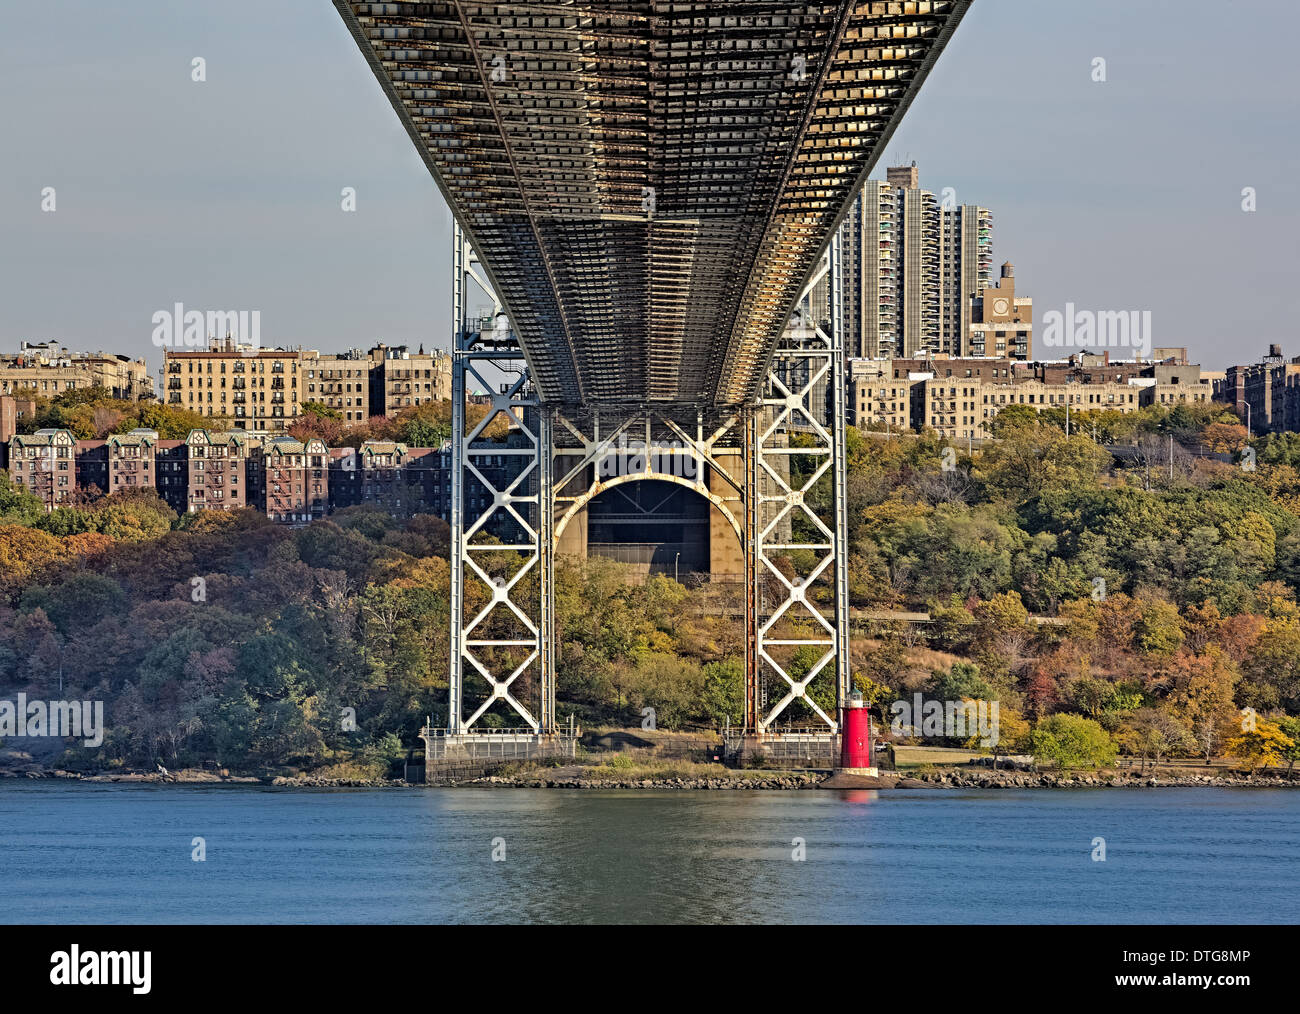 Une vue de dessous le pont George Washington Bridge (GW) également appelé au grand pont gris à l'horizon de la ville de New York et de Jeffrey's Hook Lighthouse a également appelé le phare rouge. Cette image est la version couleur. Banque D'Images